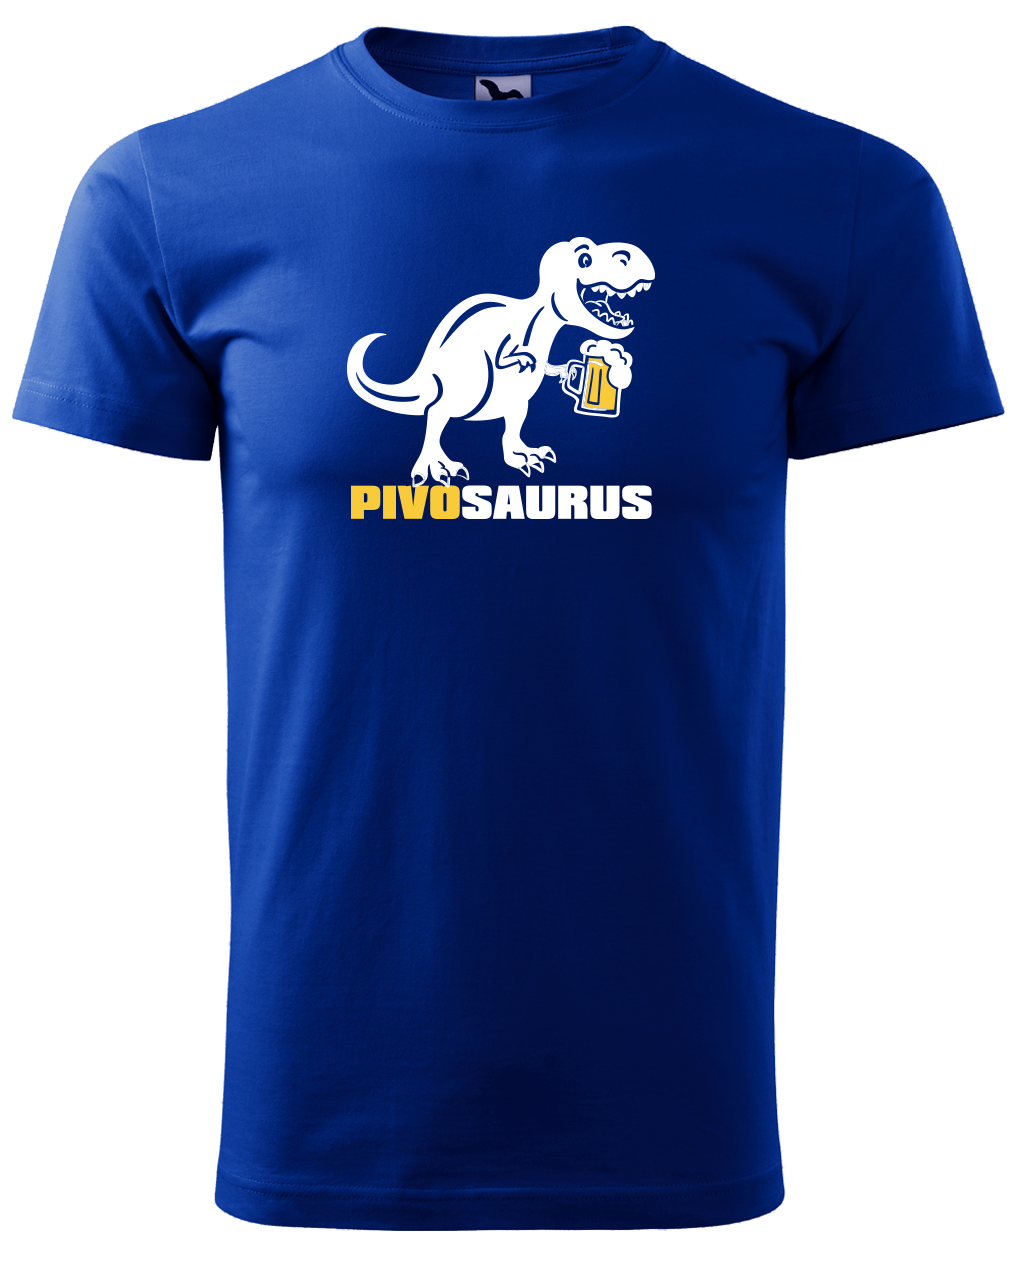 Vtipné tričko - Pivosaurus Velikost: L, Barva: Královská modrá (05)